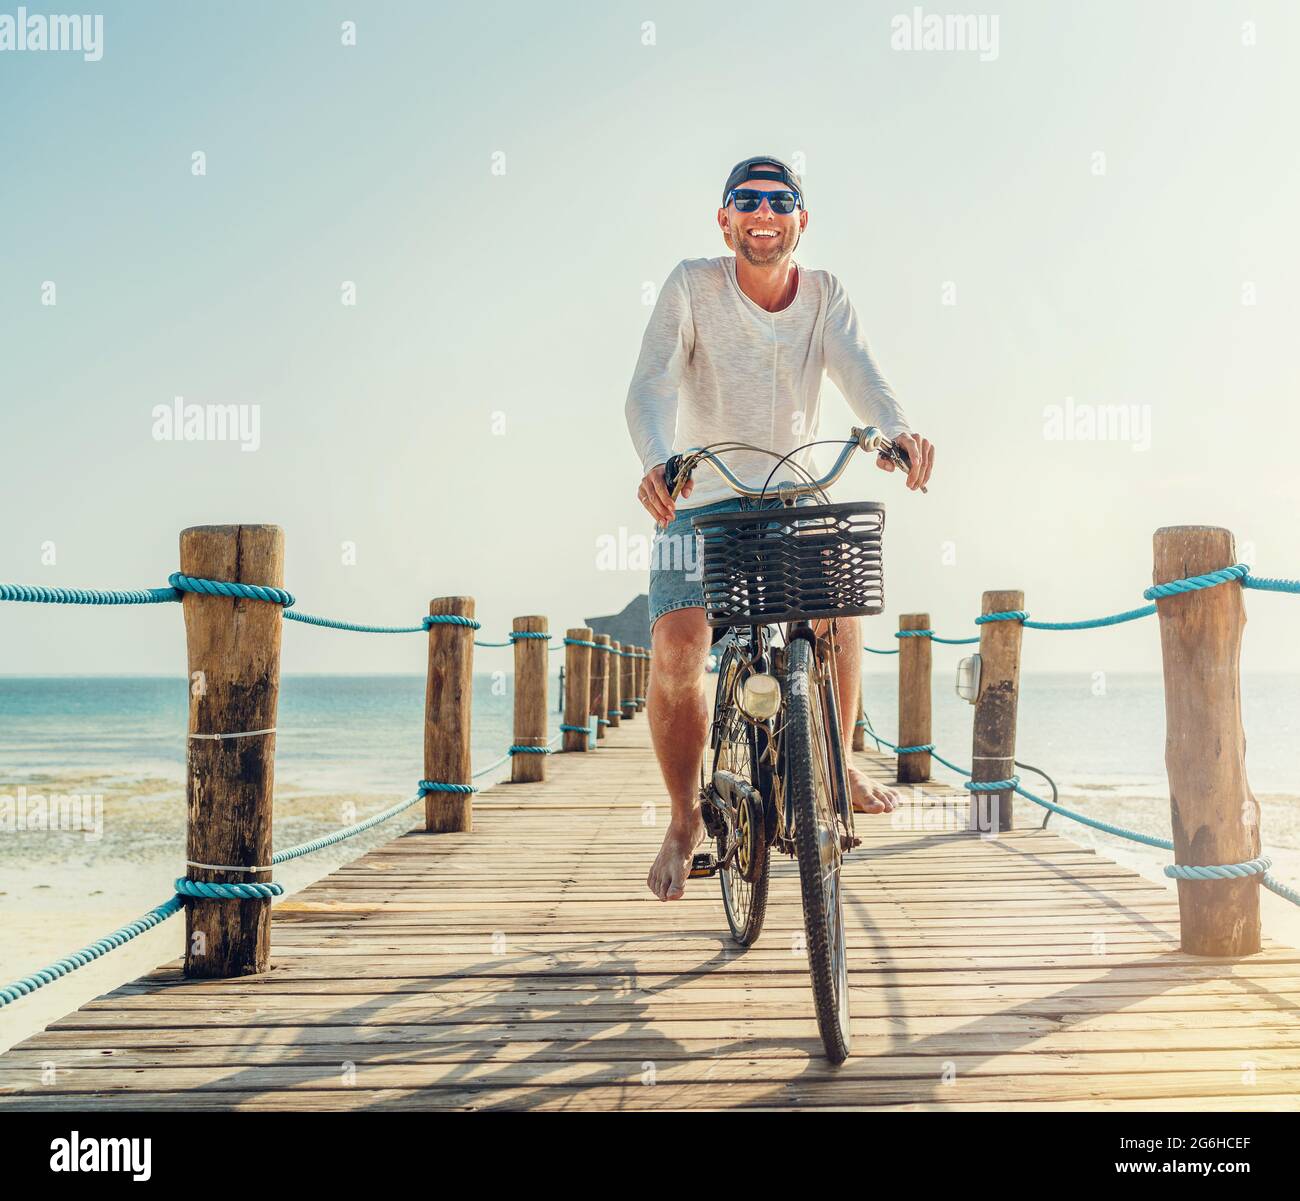 Porträt eines glücklichen lächelnden Mannes, gekleidet in leichte Sommerkleidung und Sonnenbrille, der auf dem hölzernen Seebrücke mit dem Fahrrad fährt. Sorgloser Urlaub im tropischen Stockfoto